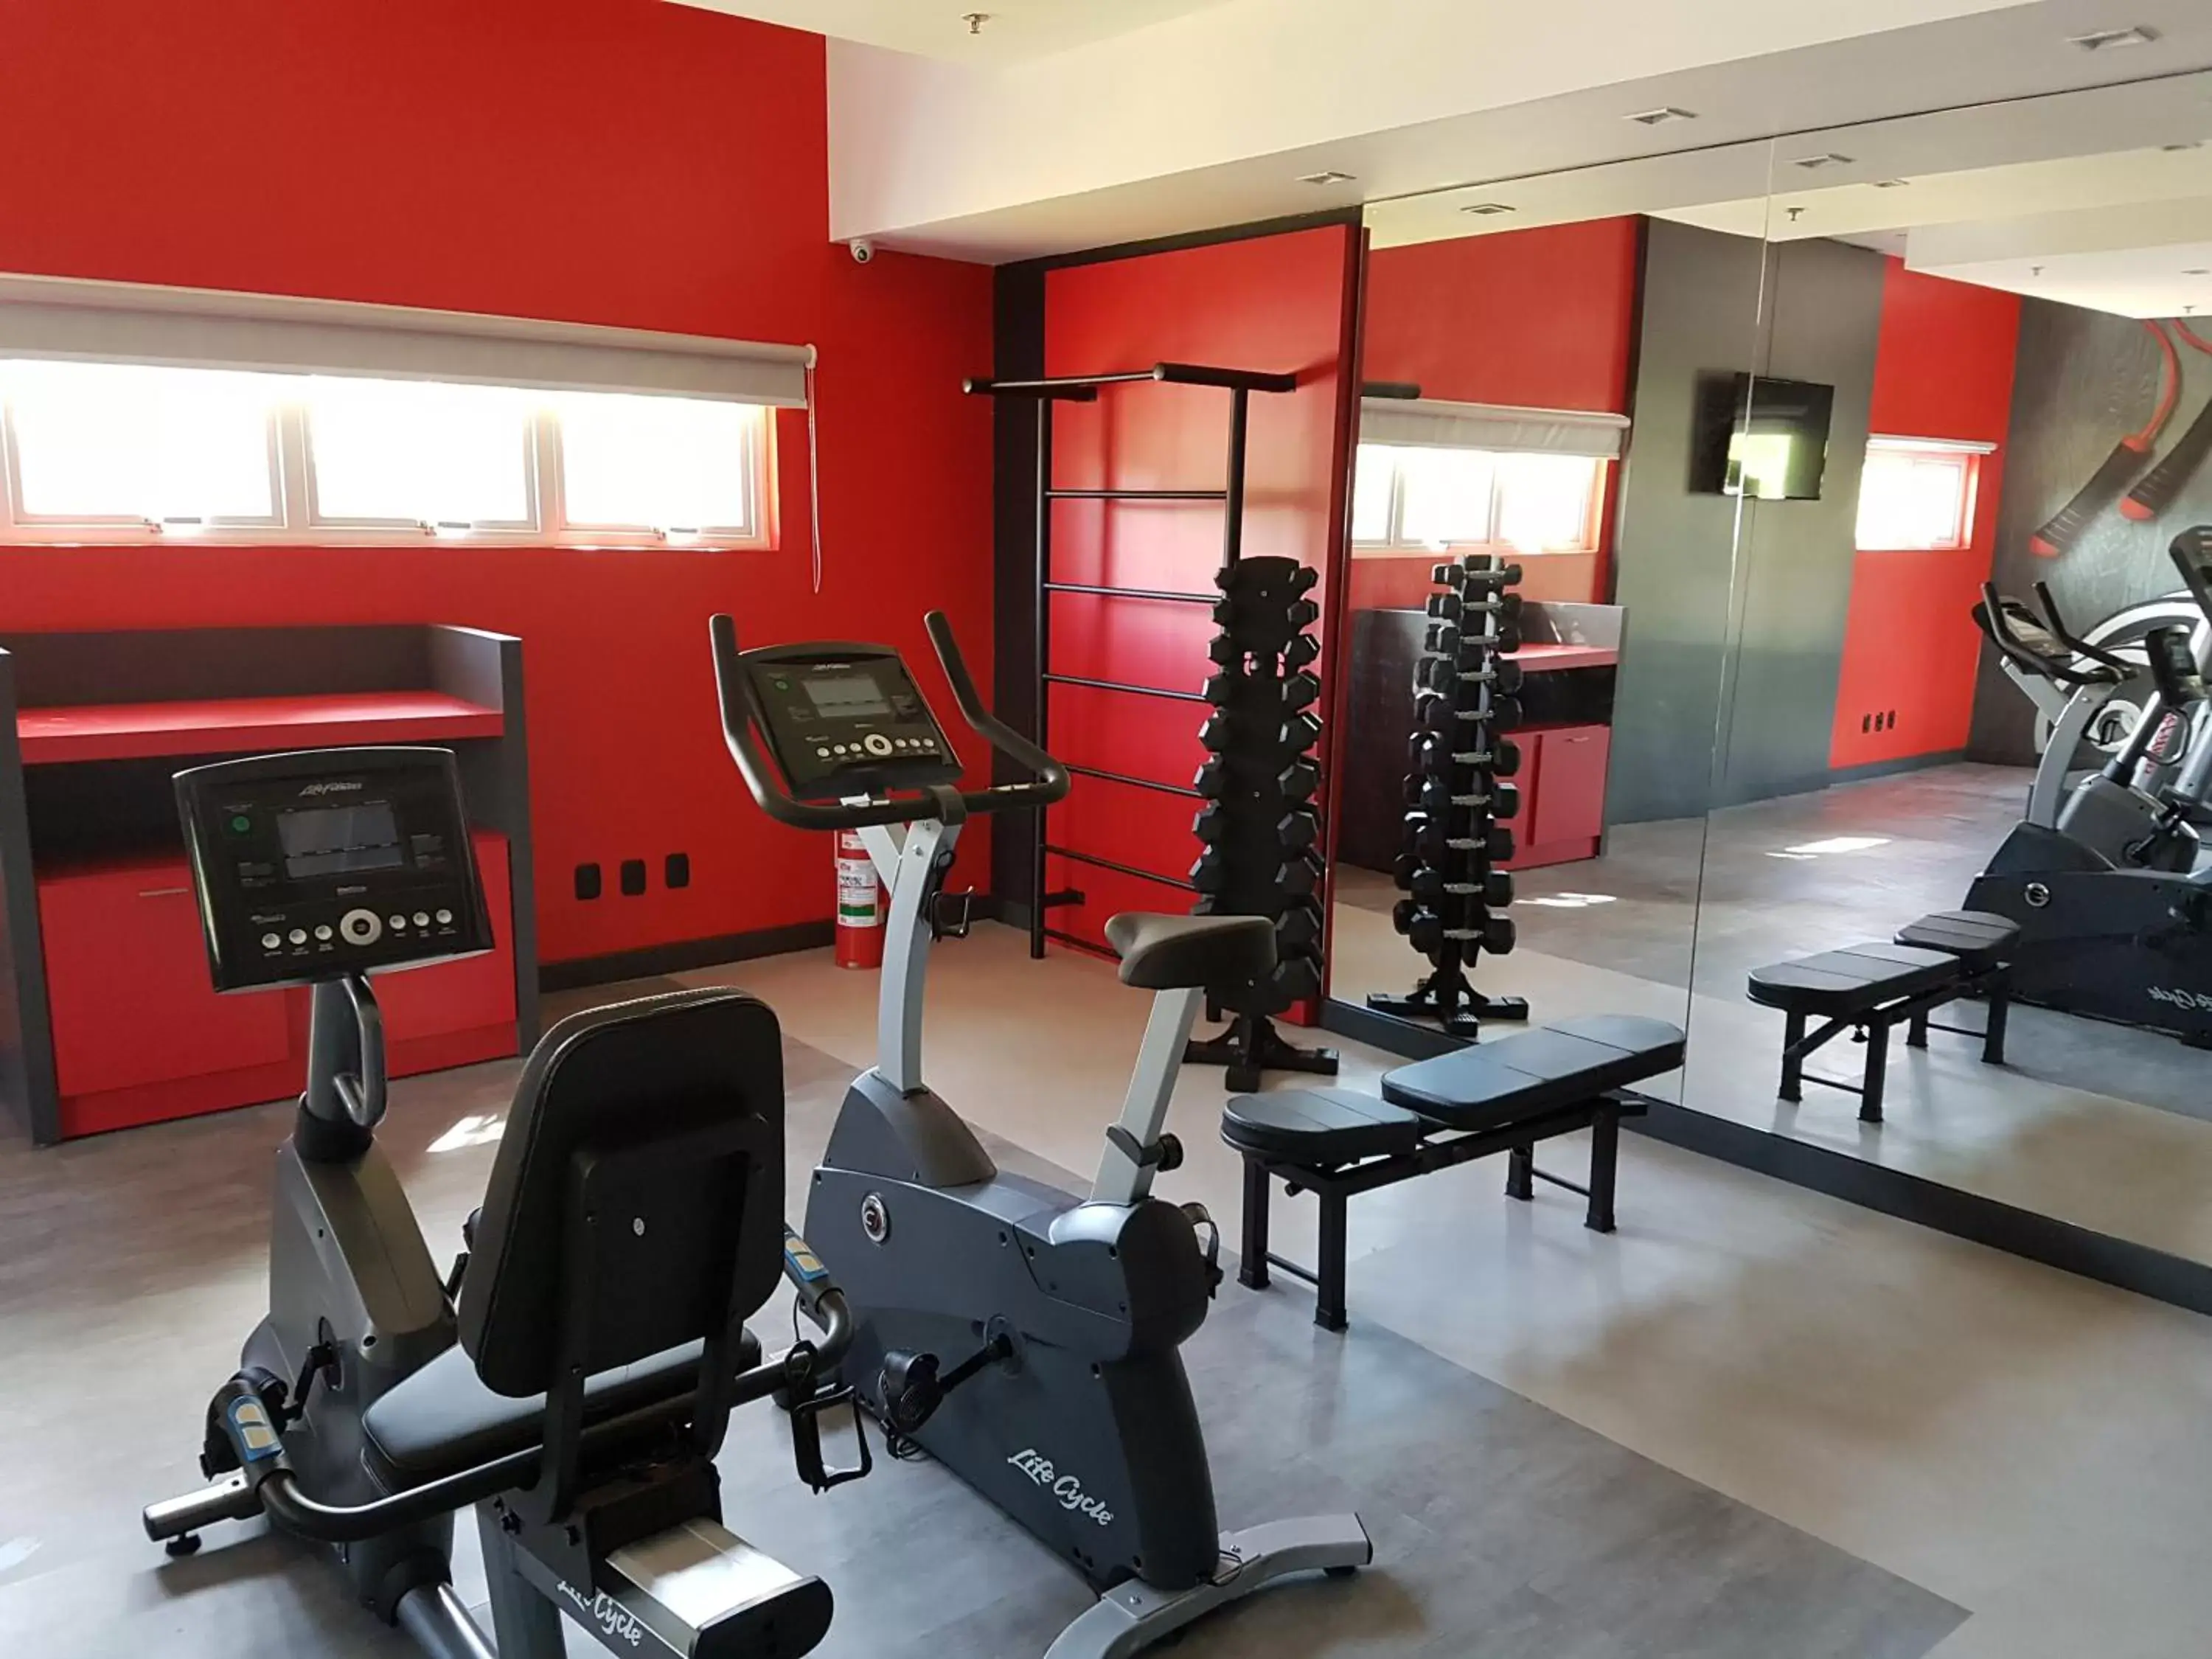 Fitness centre/facilities, Fitness Center/Facilities in ibis Porto Alegre Aeroporto